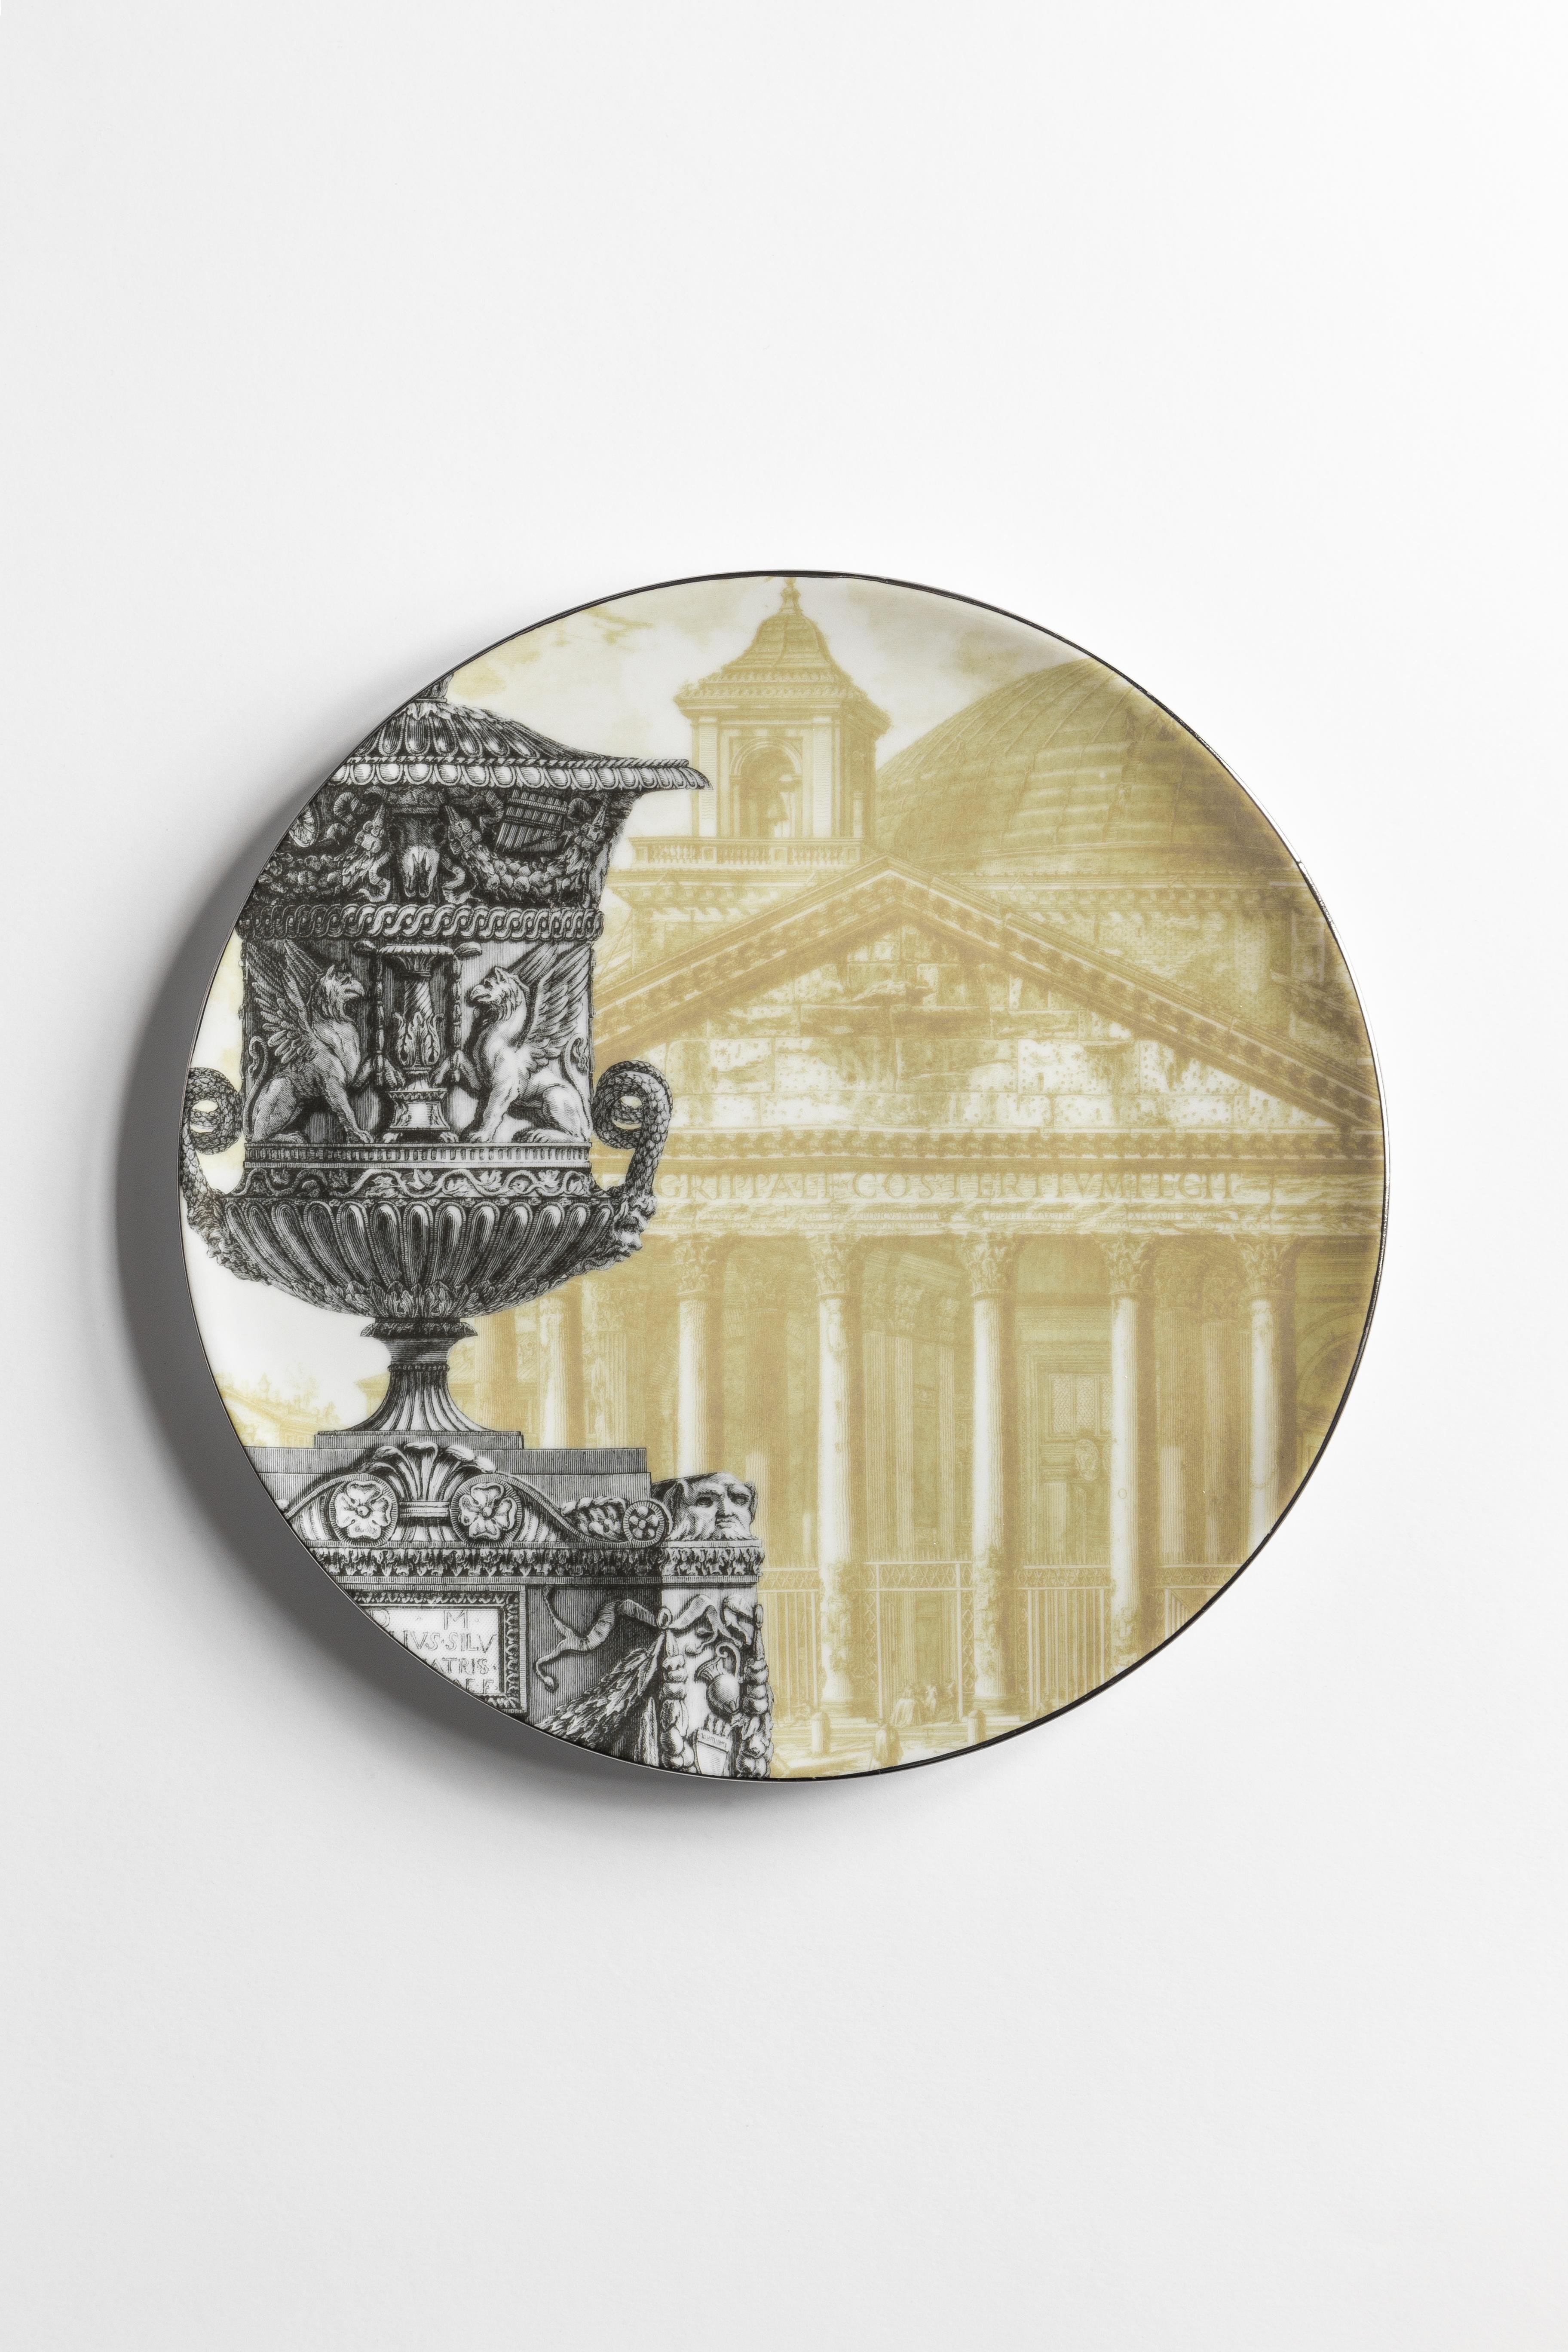 La collection Roma est une ode à la magnificence de la ville d'Eterna. Dans le sillage des plats qui présentent des photographies de quelques-uns des lieux les plus emblématiques de la ville - comme le Panthéon et le Colisée - on trouve des